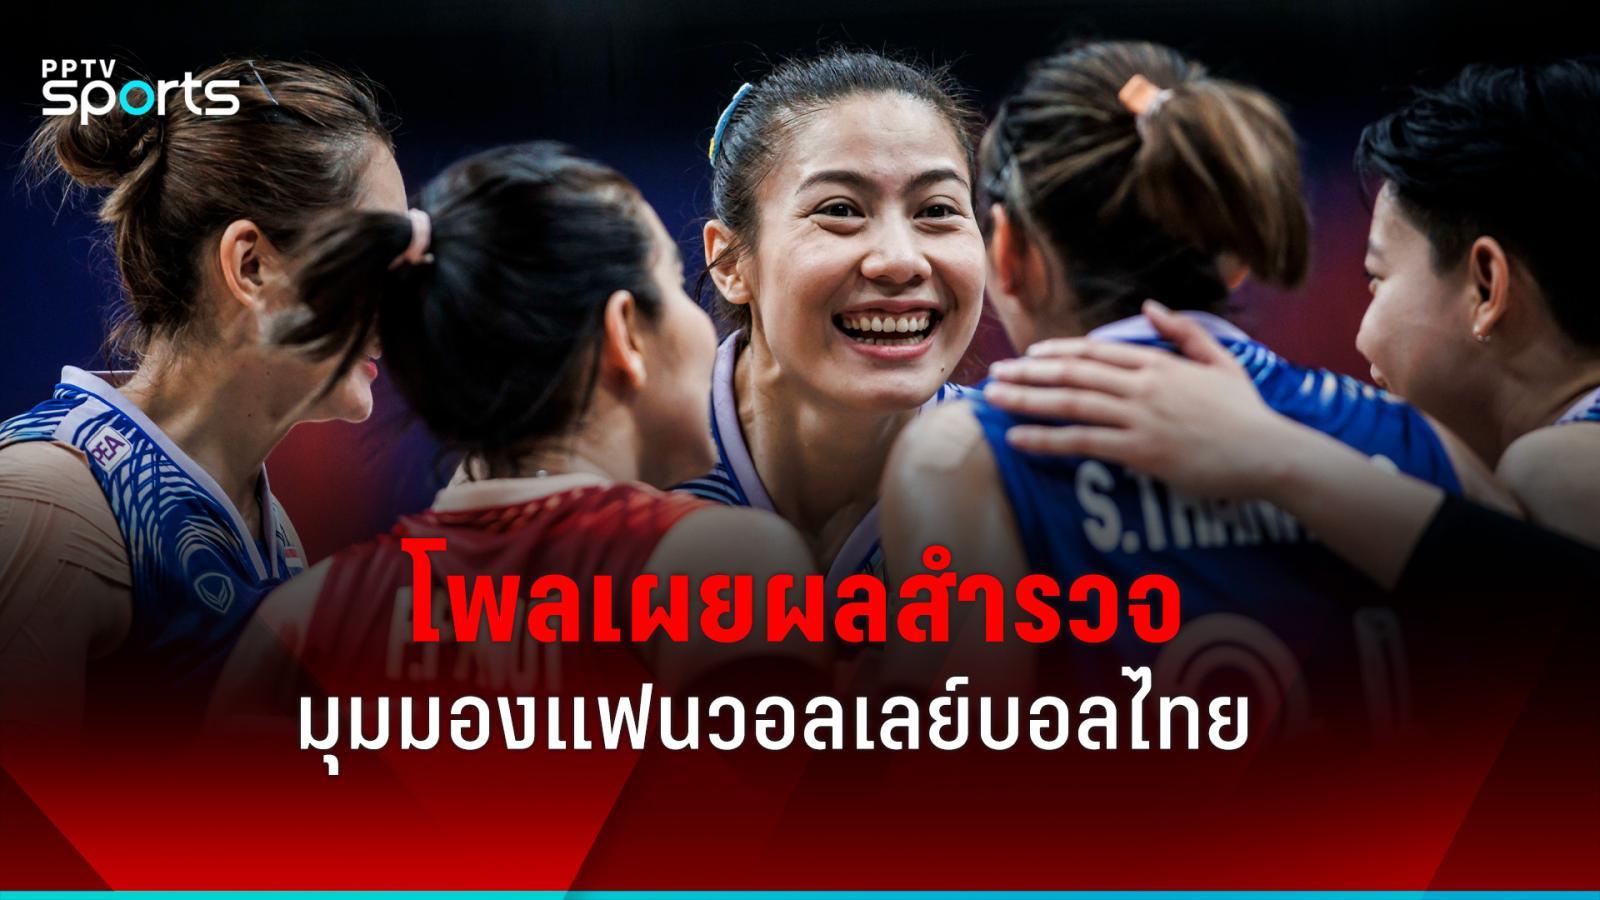 揭晓体育迷对泰国女排看法的调查结果。敦促加速培训师潜力：PPTVHD36